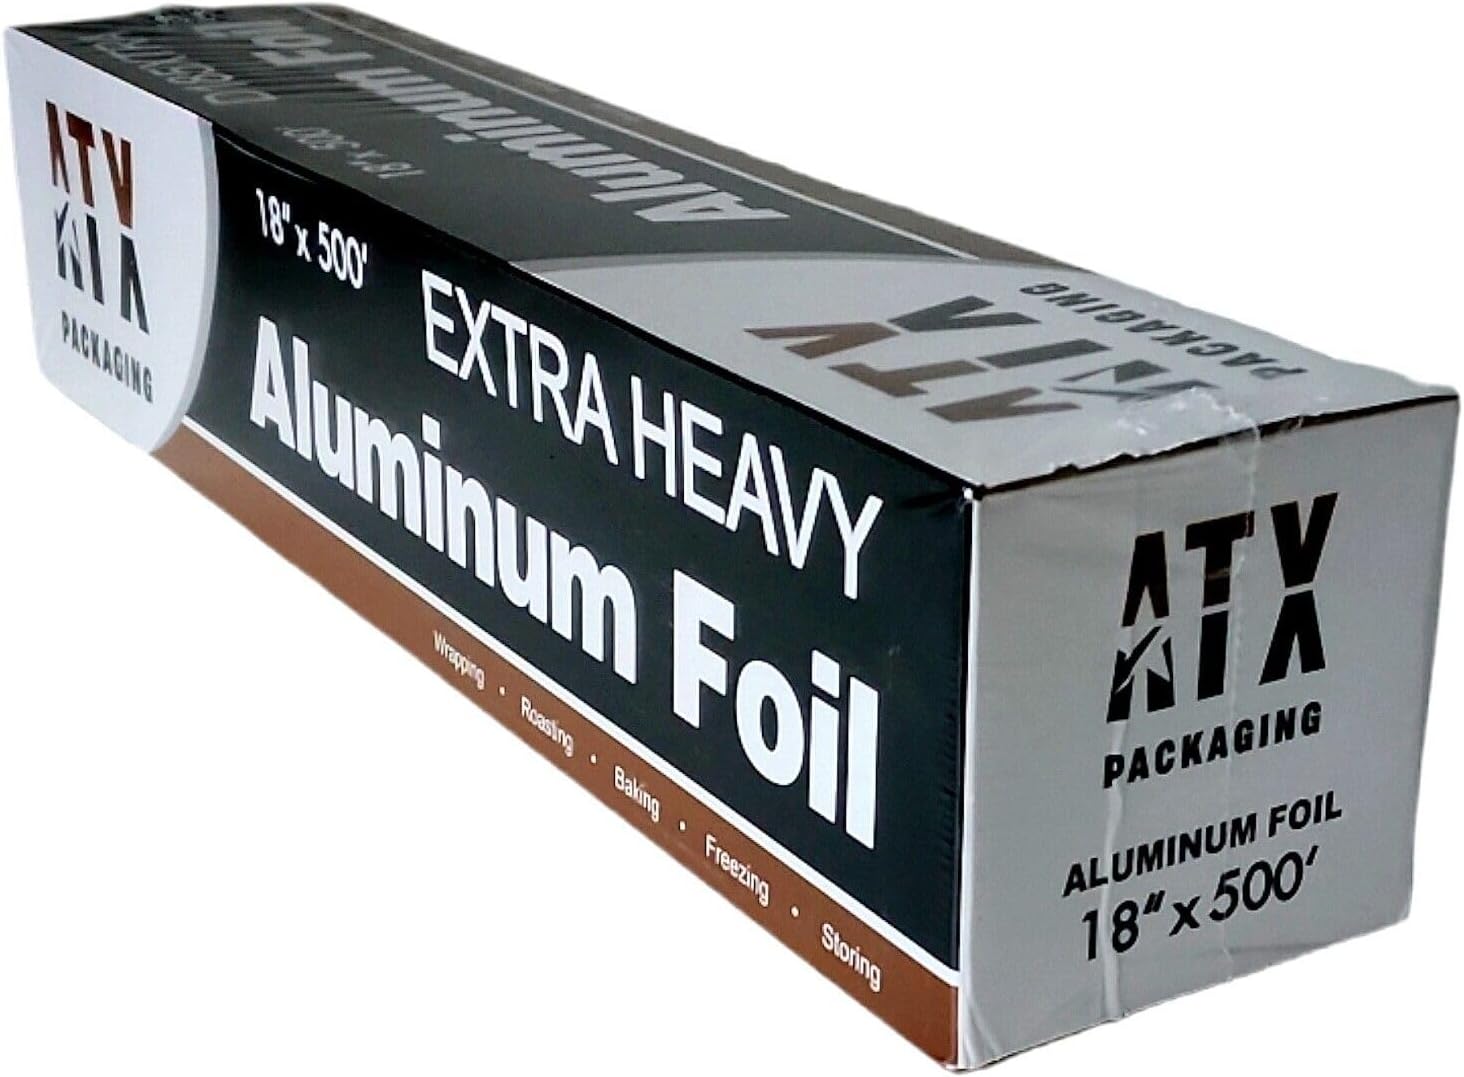 ATX 18" x 500' Extra Heavy Duty Aluminum Foil Wrap